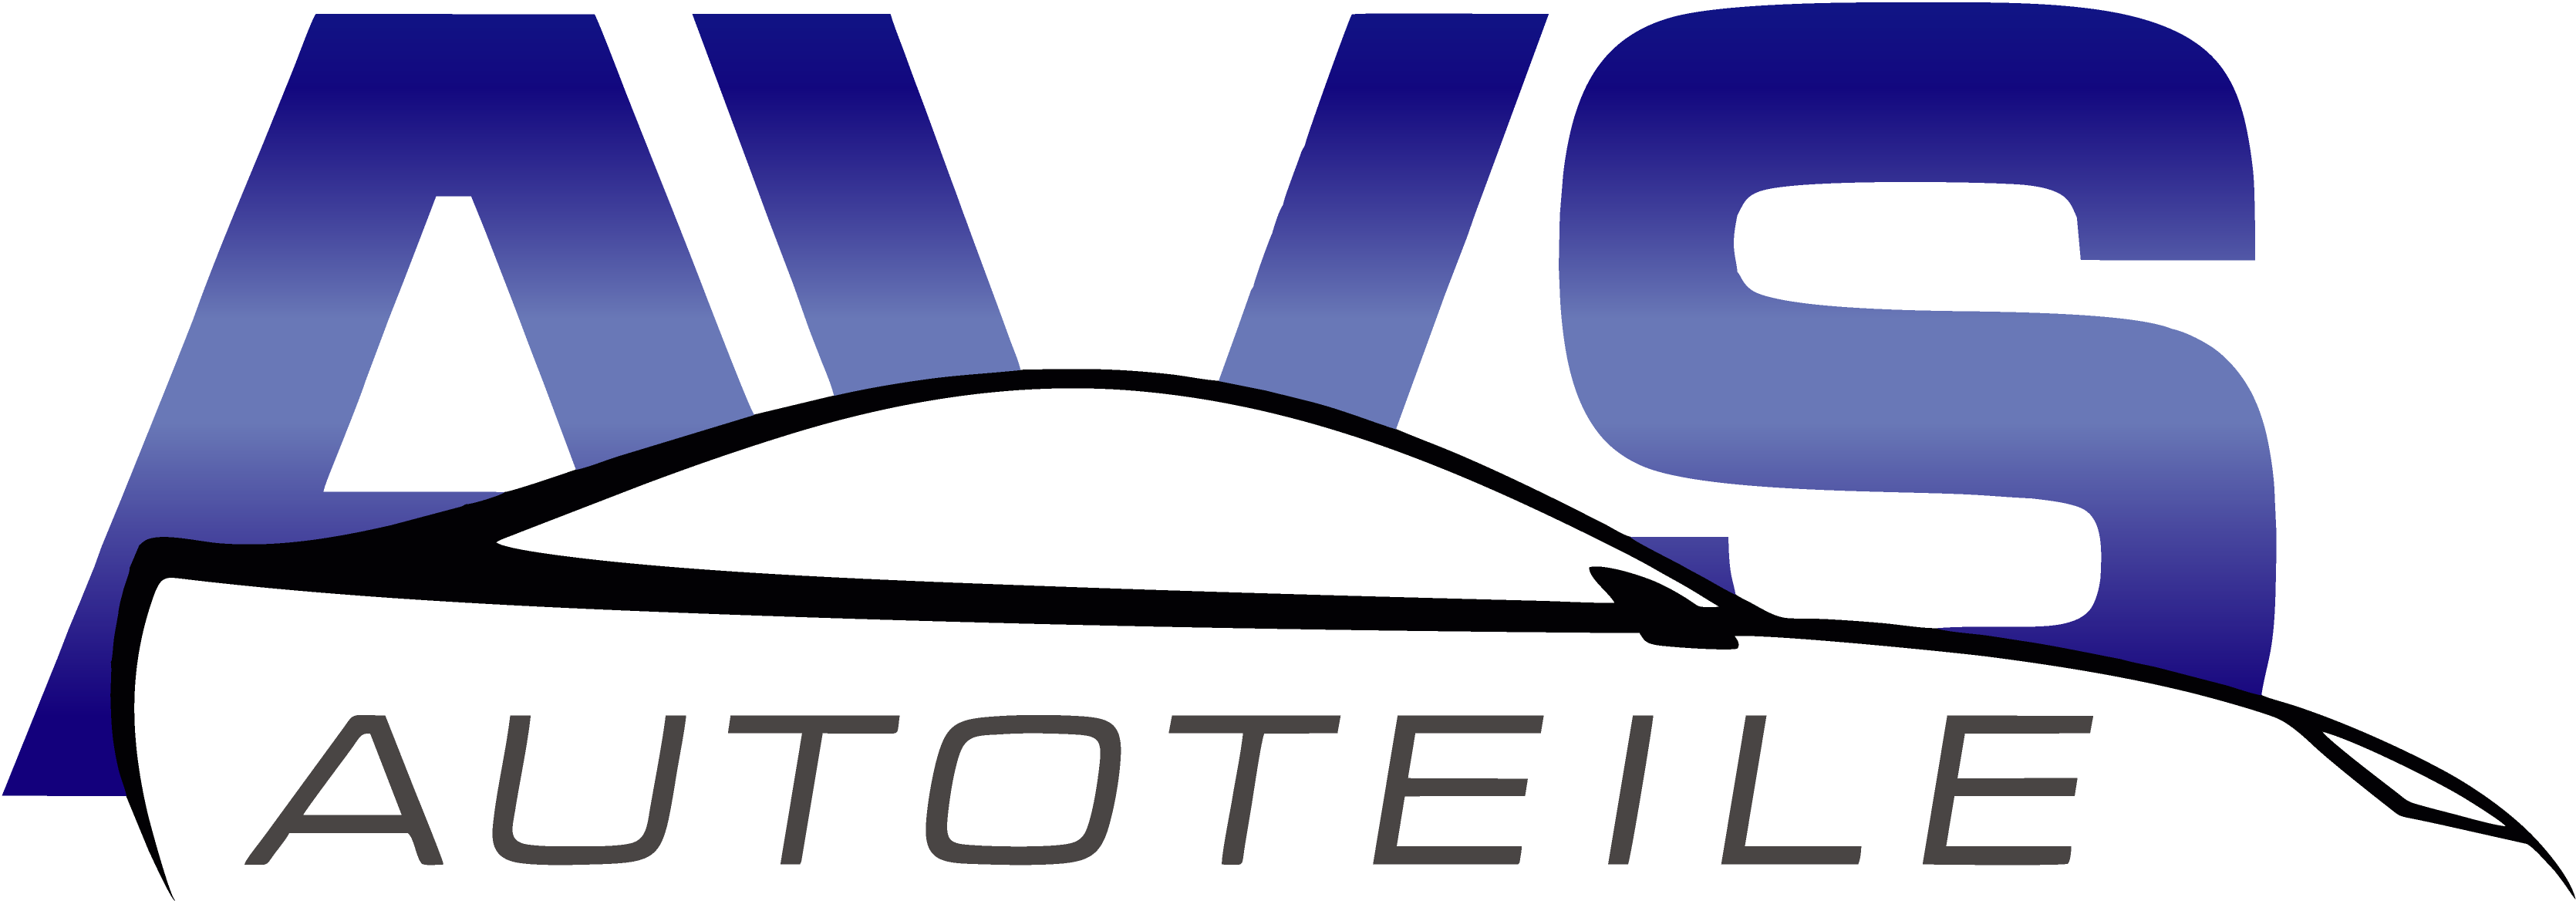 AVS-Autoteile Logo